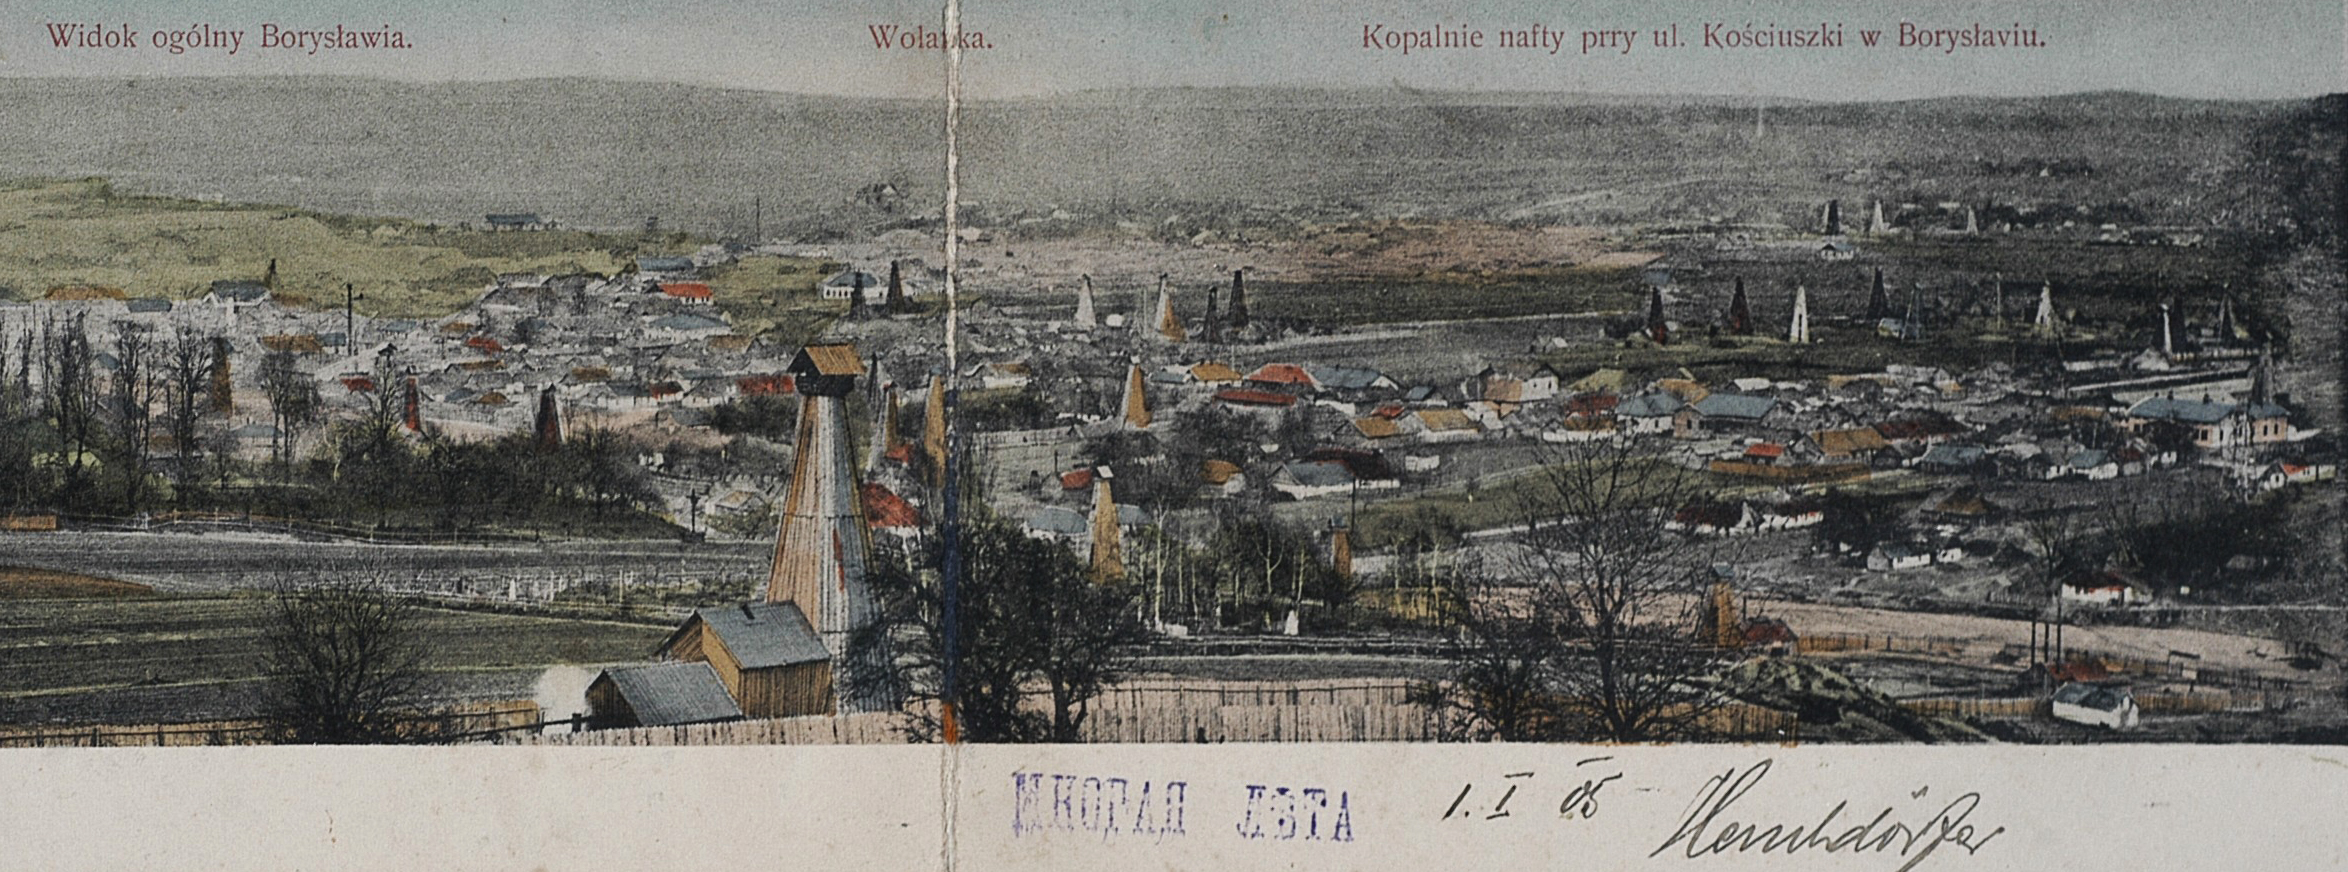 Нафтові копальні, Борислав, 1904 р.